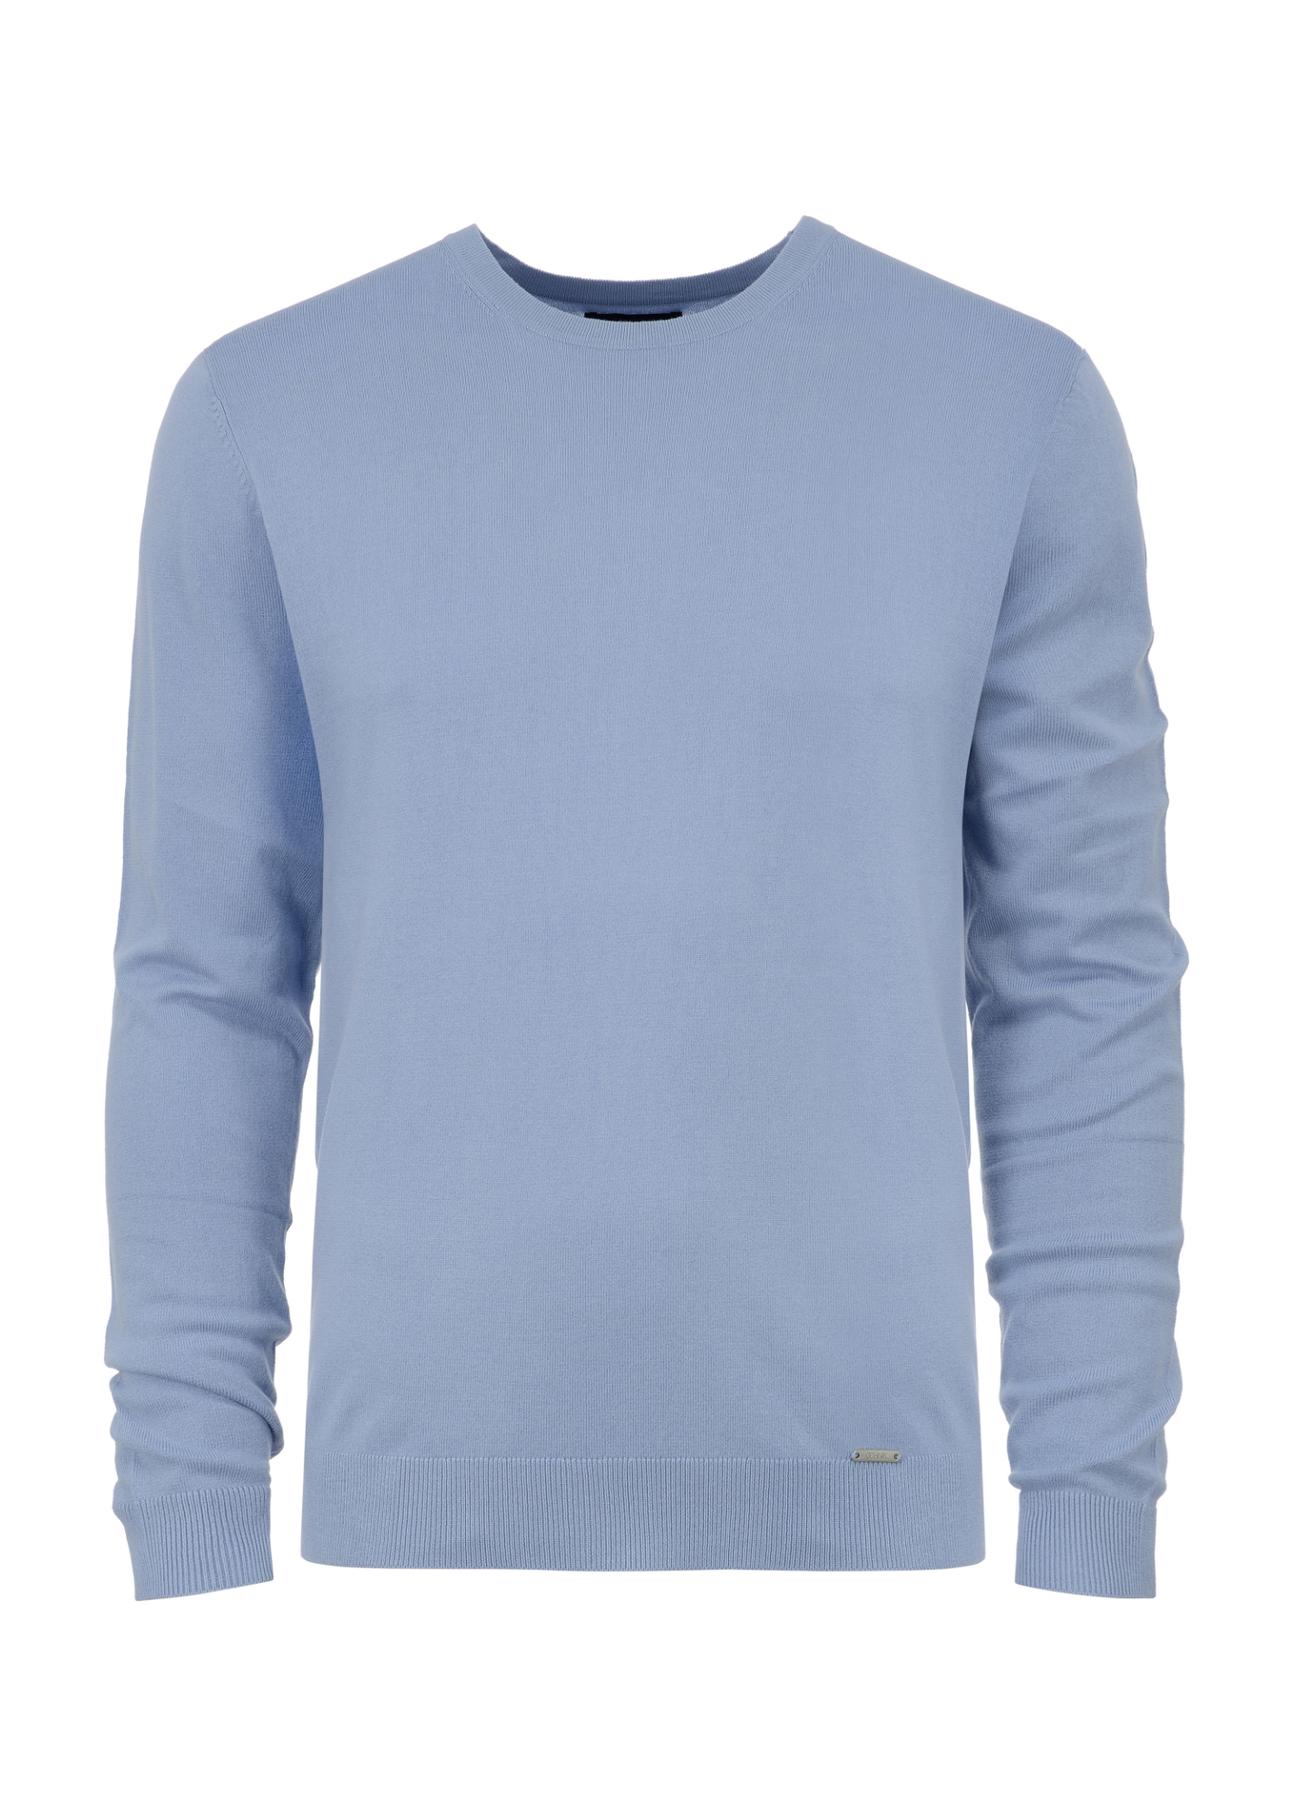 Niebieski sweter męski basic SWEMT-0127-61(W23)-04